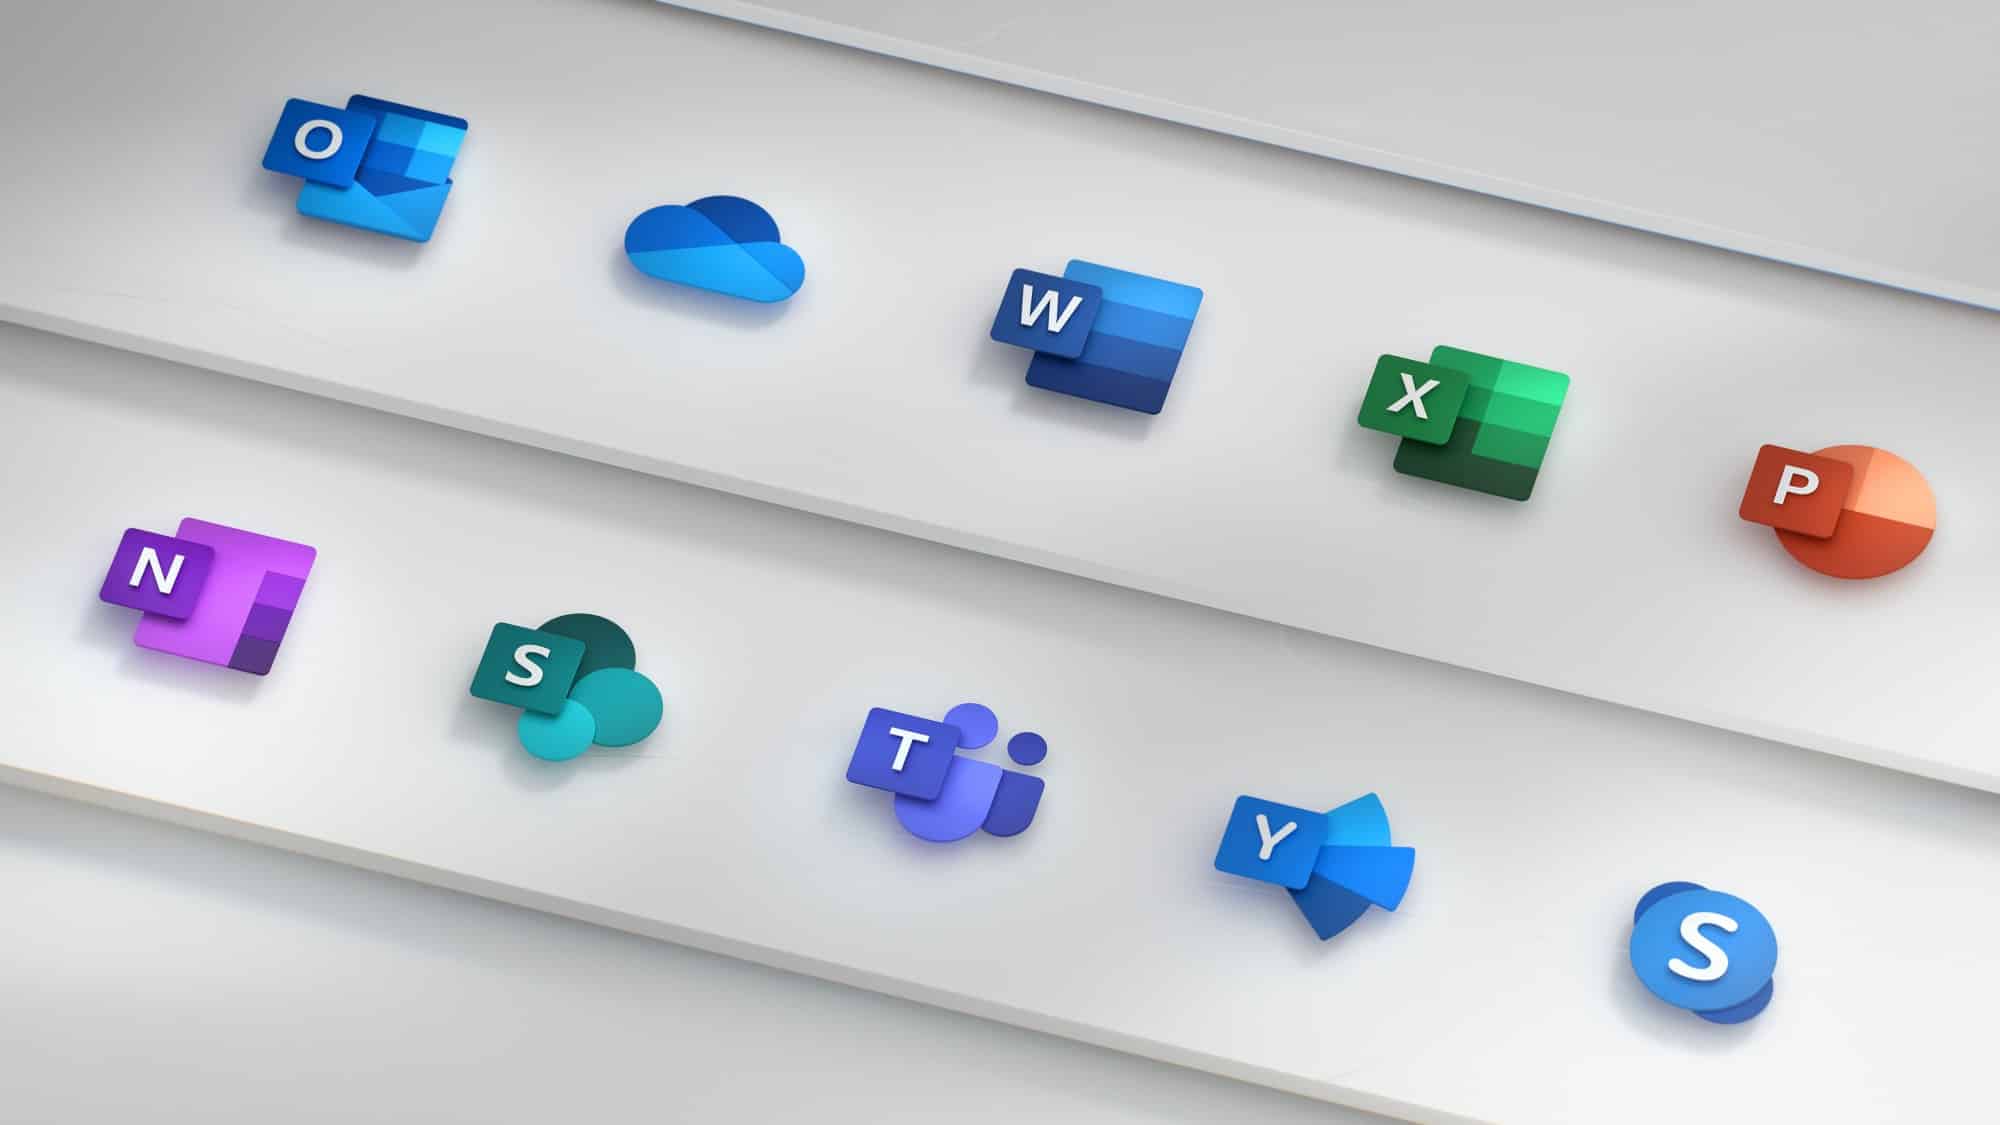 Microsoft dévoile les nouvelles icônes d'Office, plus moderne et axées sur le collaboratif